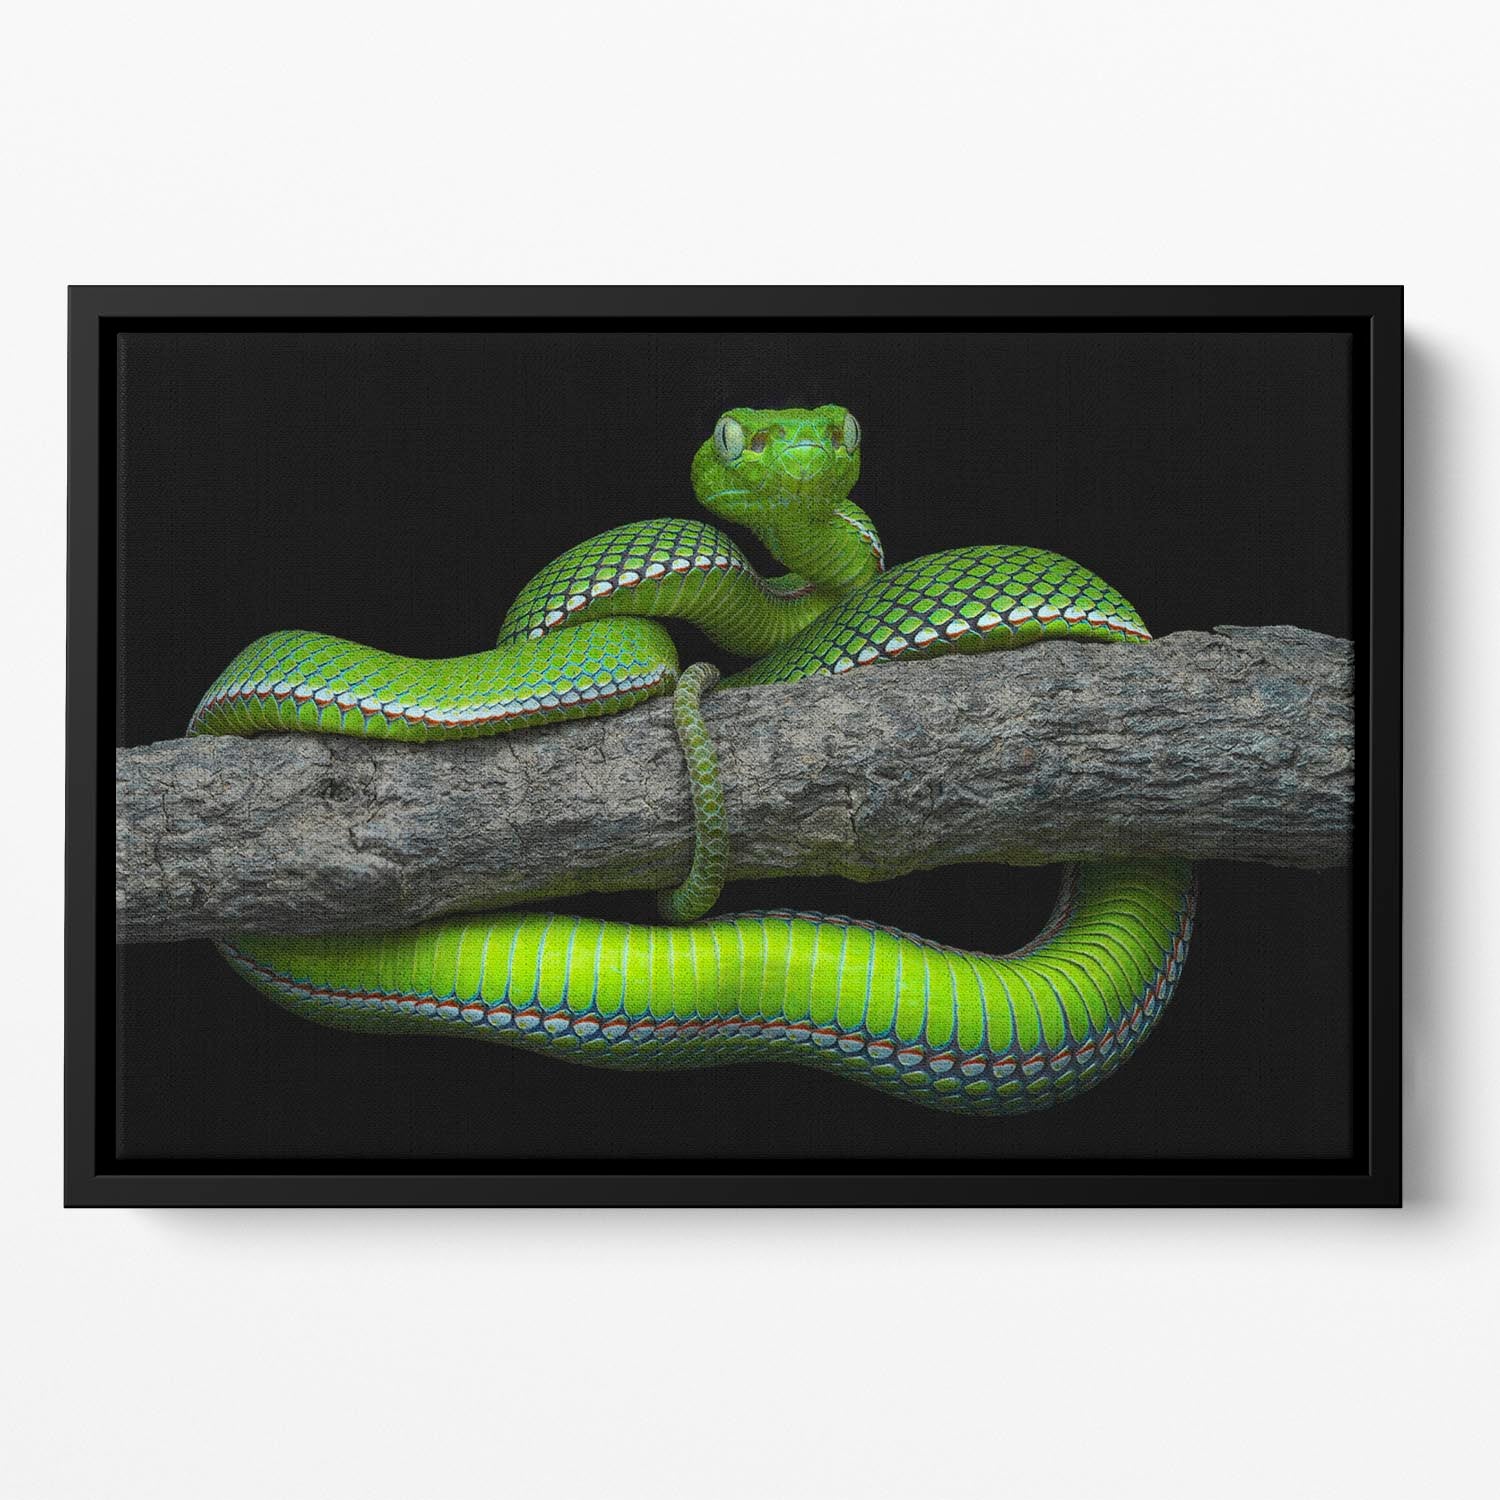 Green Trimeresurus Vogeli Snake Floating Framed Canvas - Canvas Art Rocks - 2